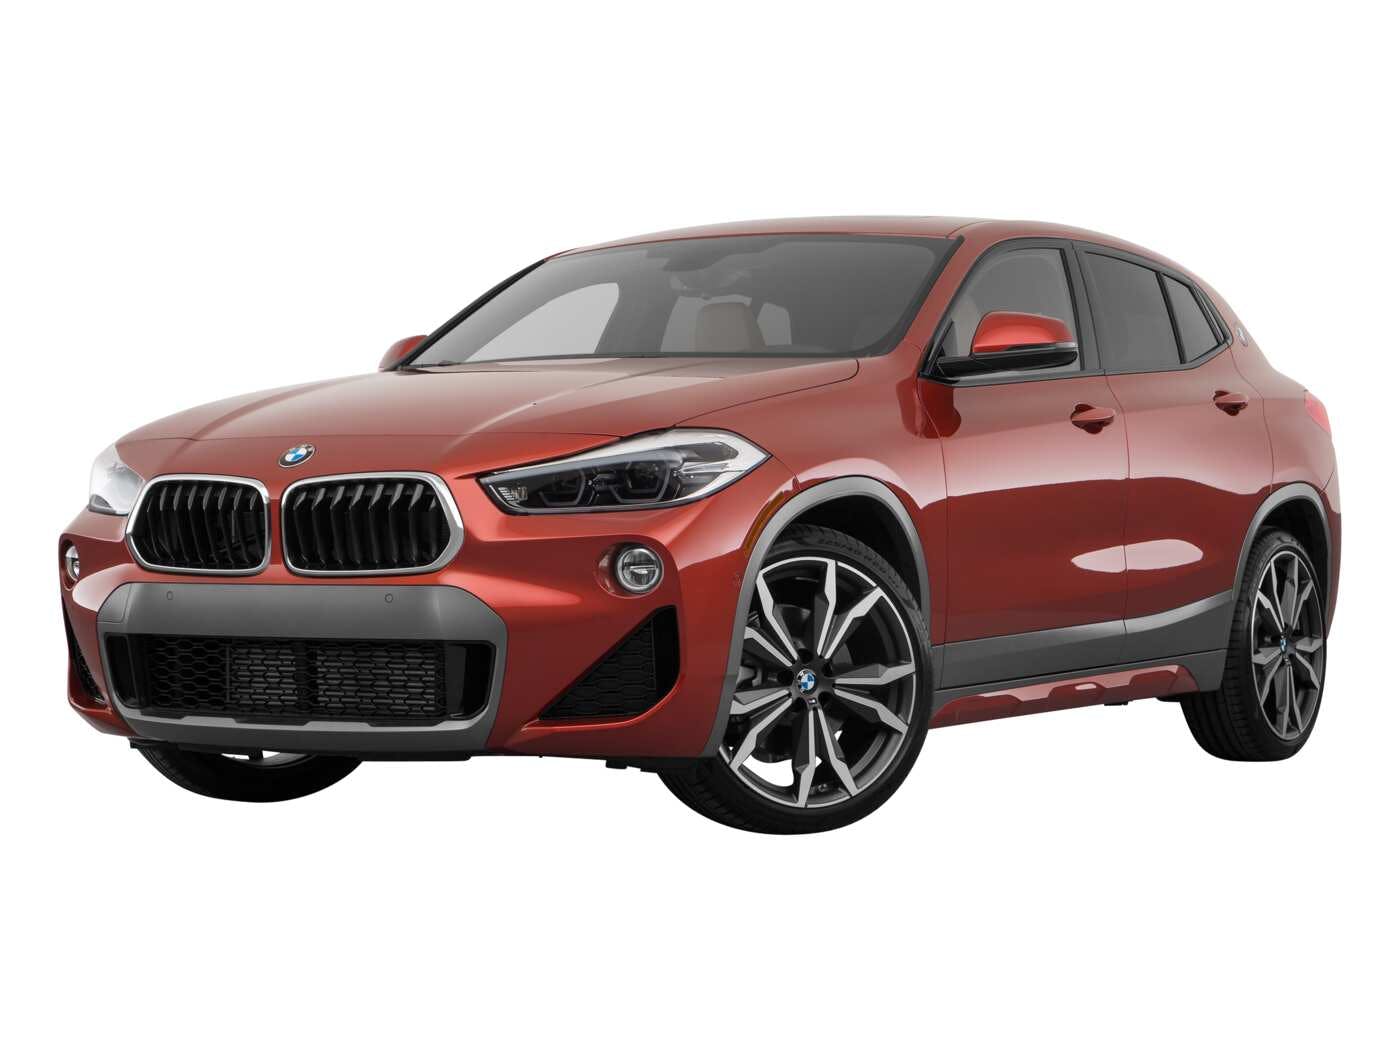 2019 BMW X2 Review  Pricing, Trims & Photos - TrueCar